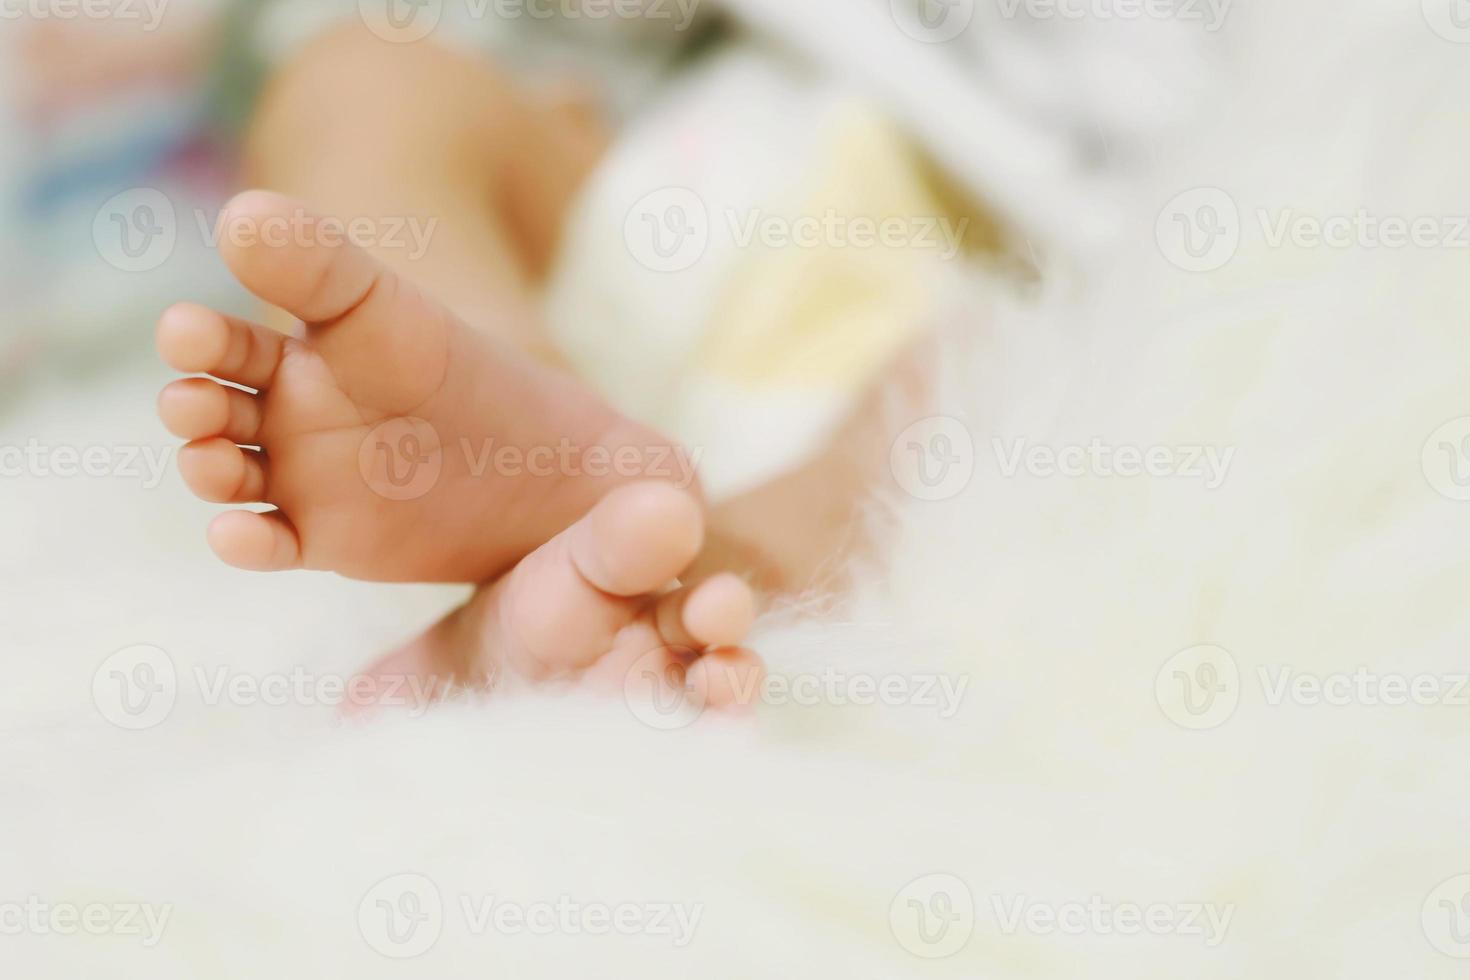 cerrar los pies del bebé recién nacido en las manos de la madre. los pies del bebé en manos con forma de mujer mamá y su hijo. hermosa imagen conceptual de la maternidad foto